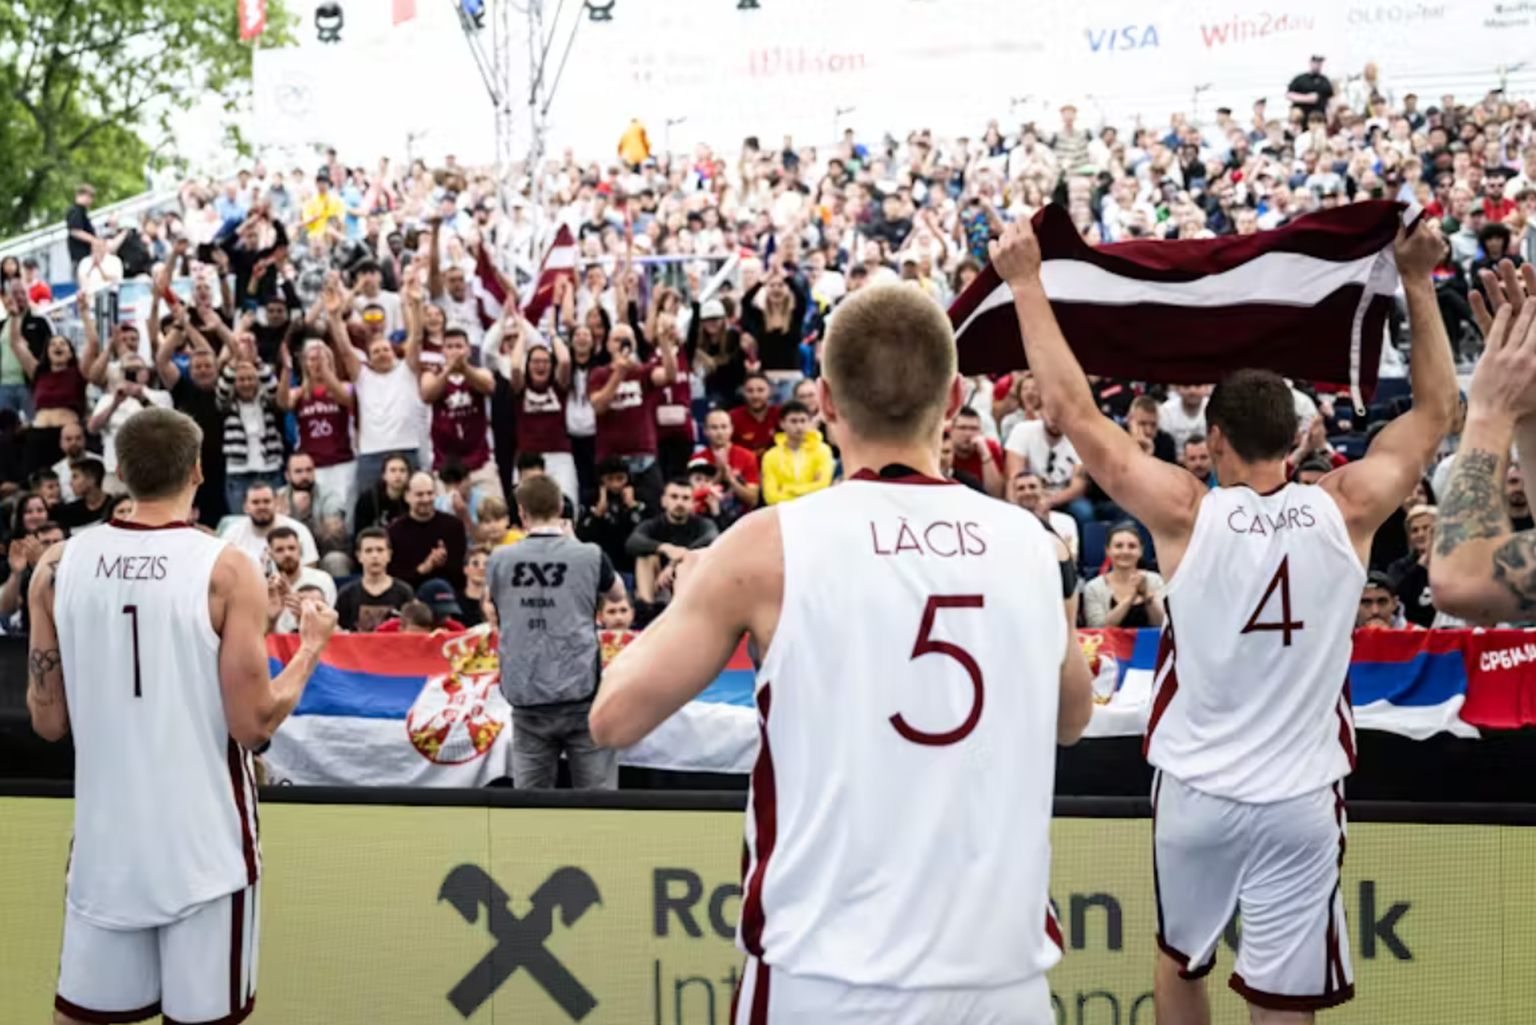 Latvijas 3x3 basketbolisti Nauris Miezis, Francis Lācis, Agnis Čavars